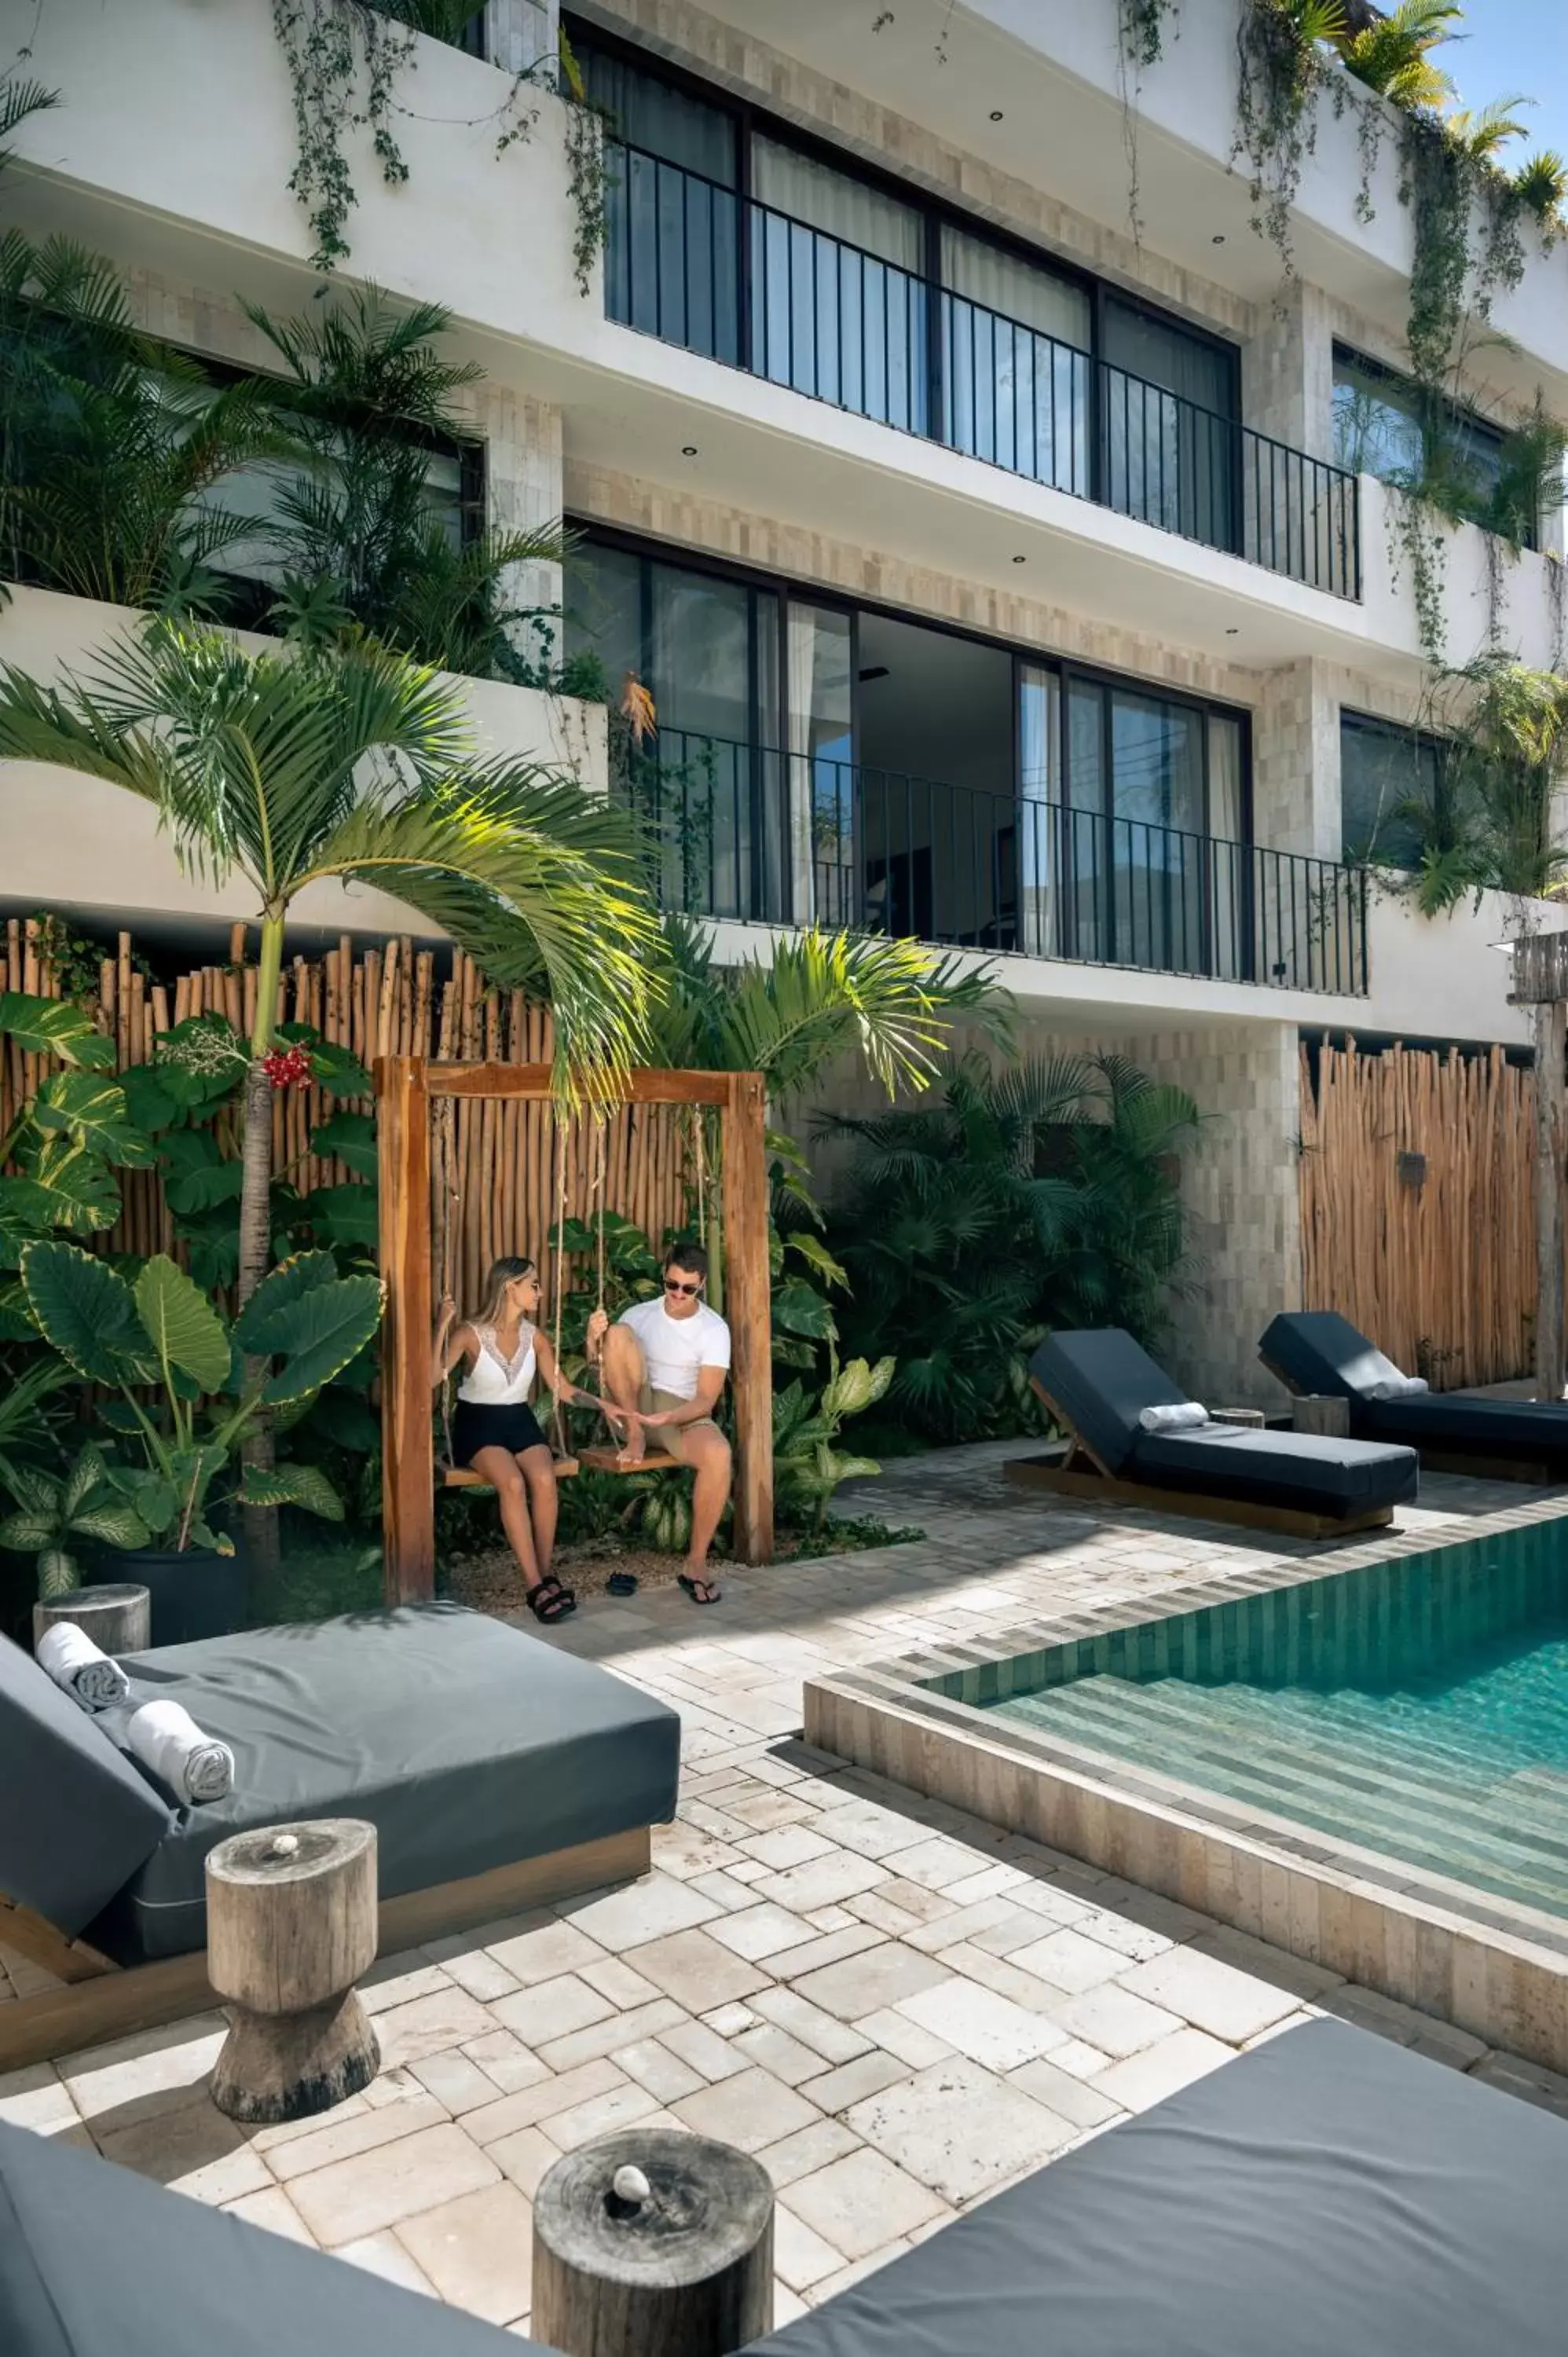 Property building, Swimming Pool in Majaro Hotel Tulum